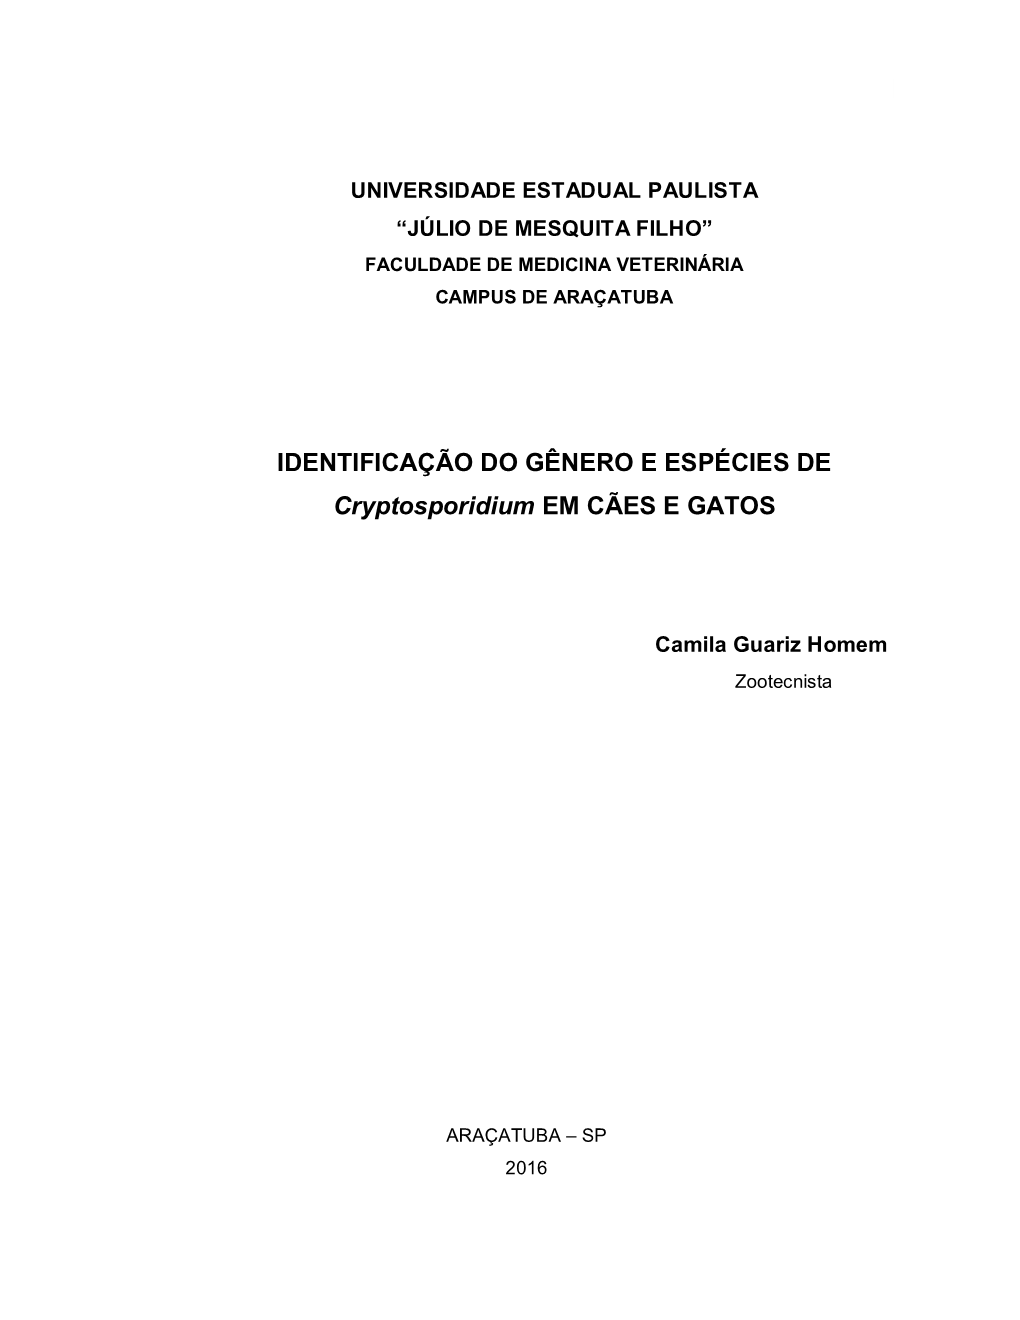 IDENTIFICAÇÃO DO GÊNERO E ESPÉCIES DE Cryptosporidium EM CÃES E GATOS